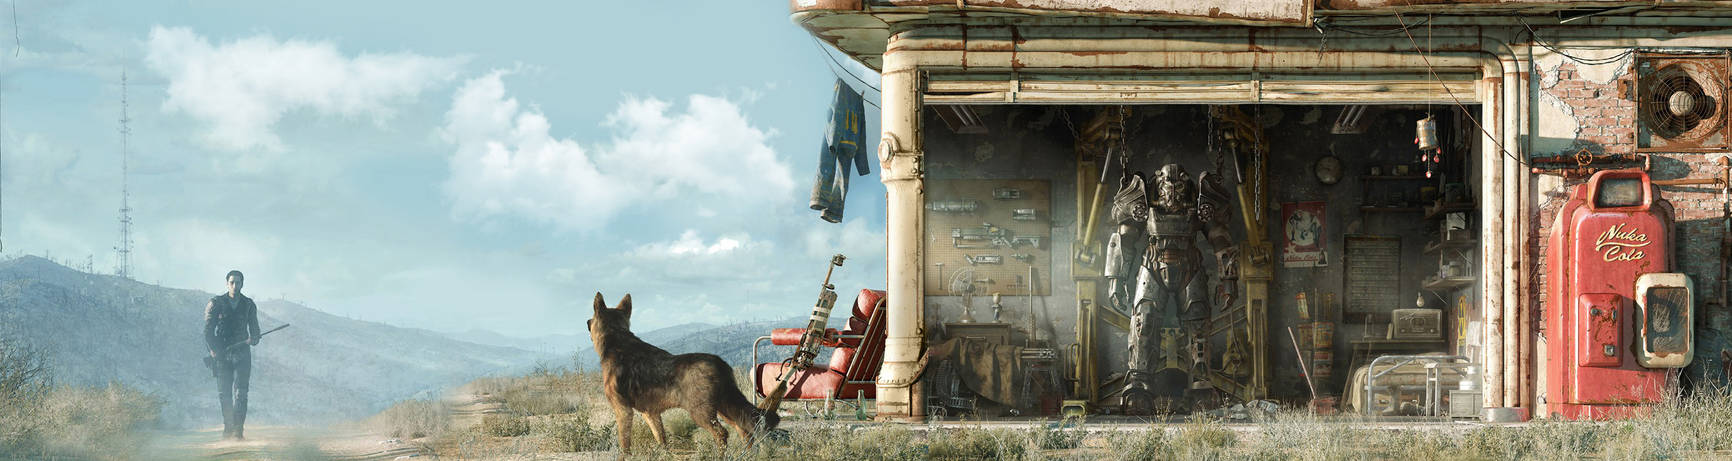 Fallout 4 как на полный экран фото 110